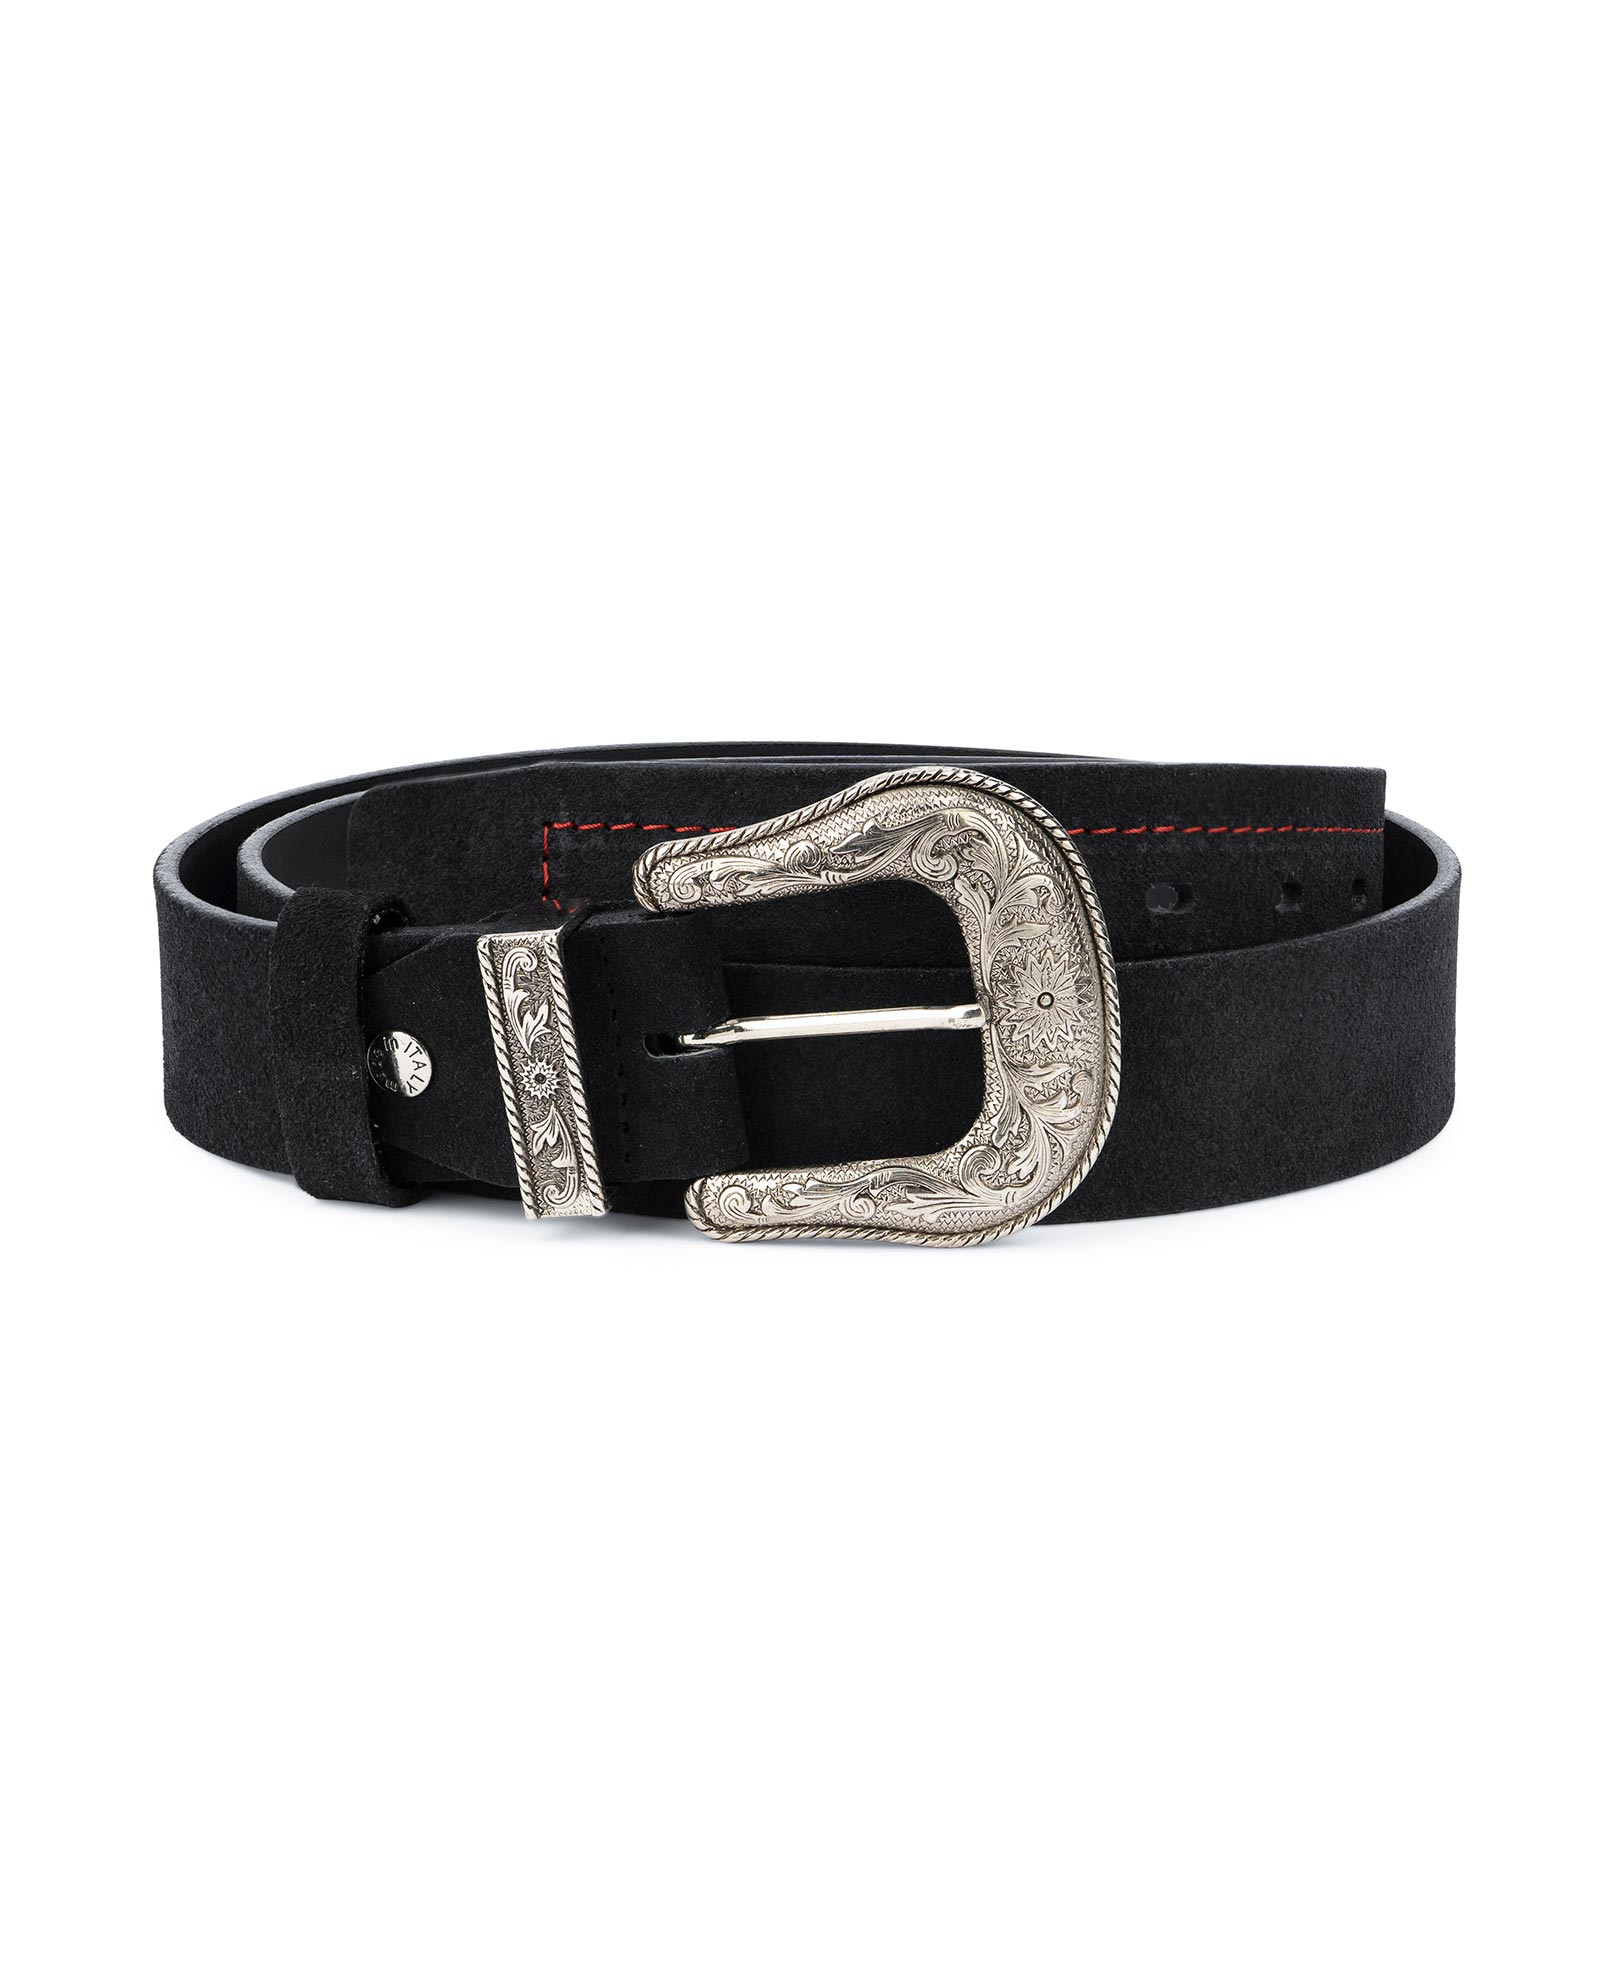 3D Mens Black Western Belt Buy A Basic Black Leather Western Belt For ...